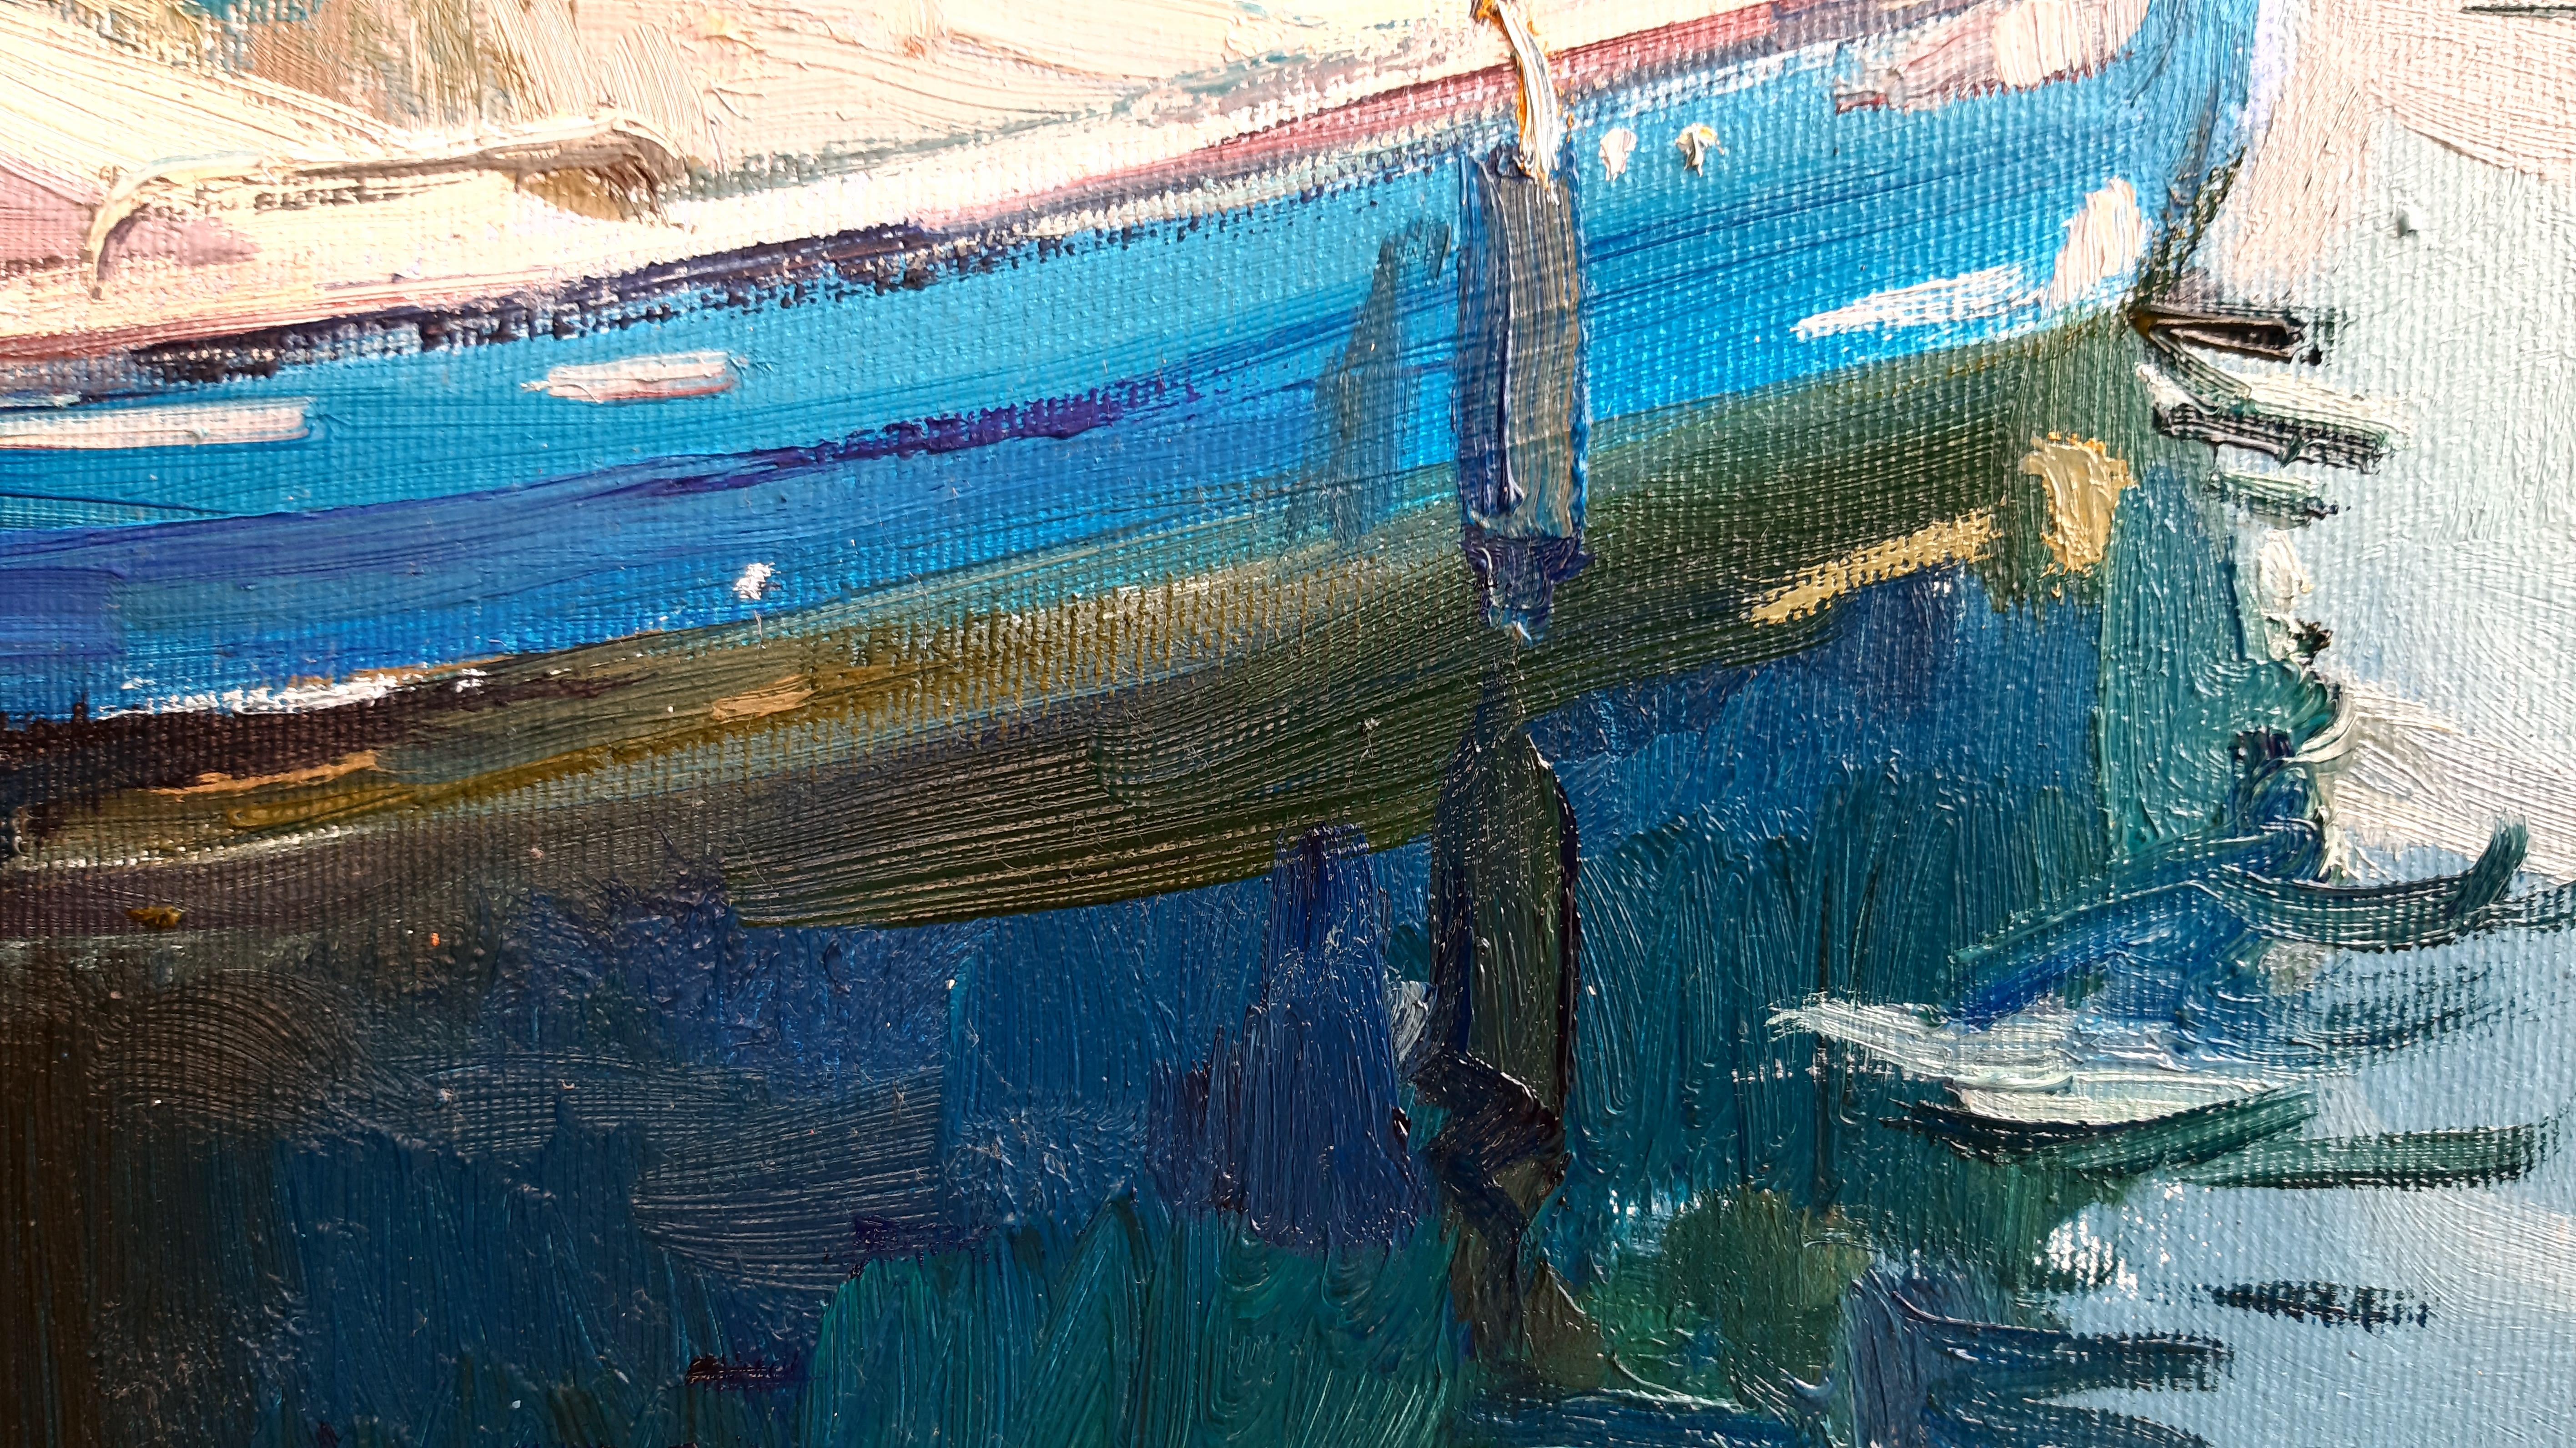 Wharf – maritime Landschaft, Gemälde in Farben Blau, Grün, Weiß, Braun und Grau 5